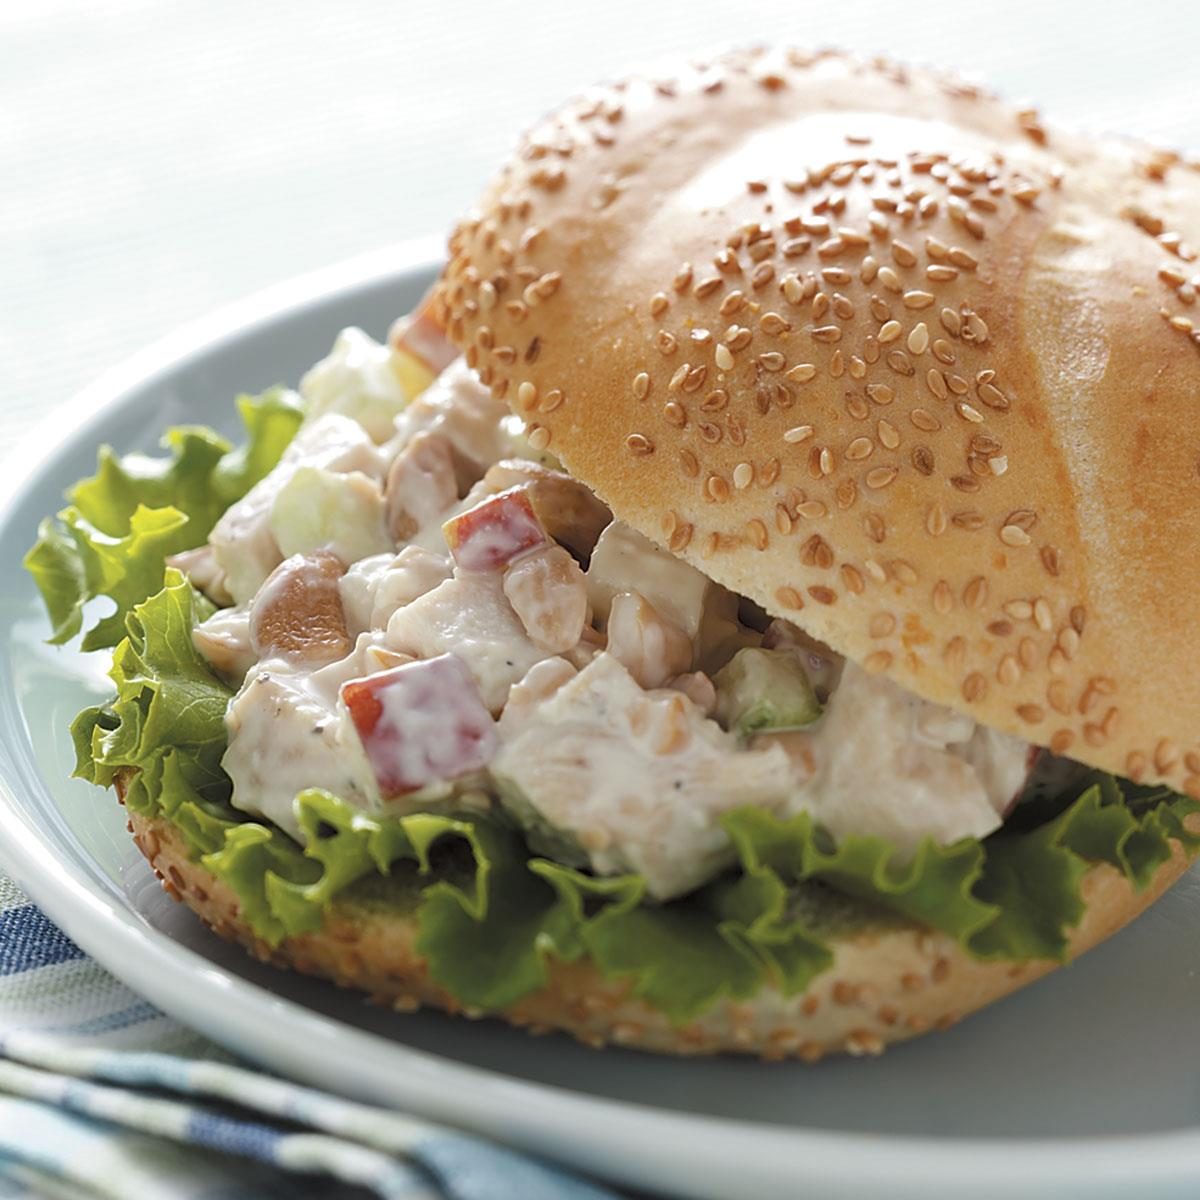 Cashew Chicken Salad Sandwiches Recipe | Taste of Home